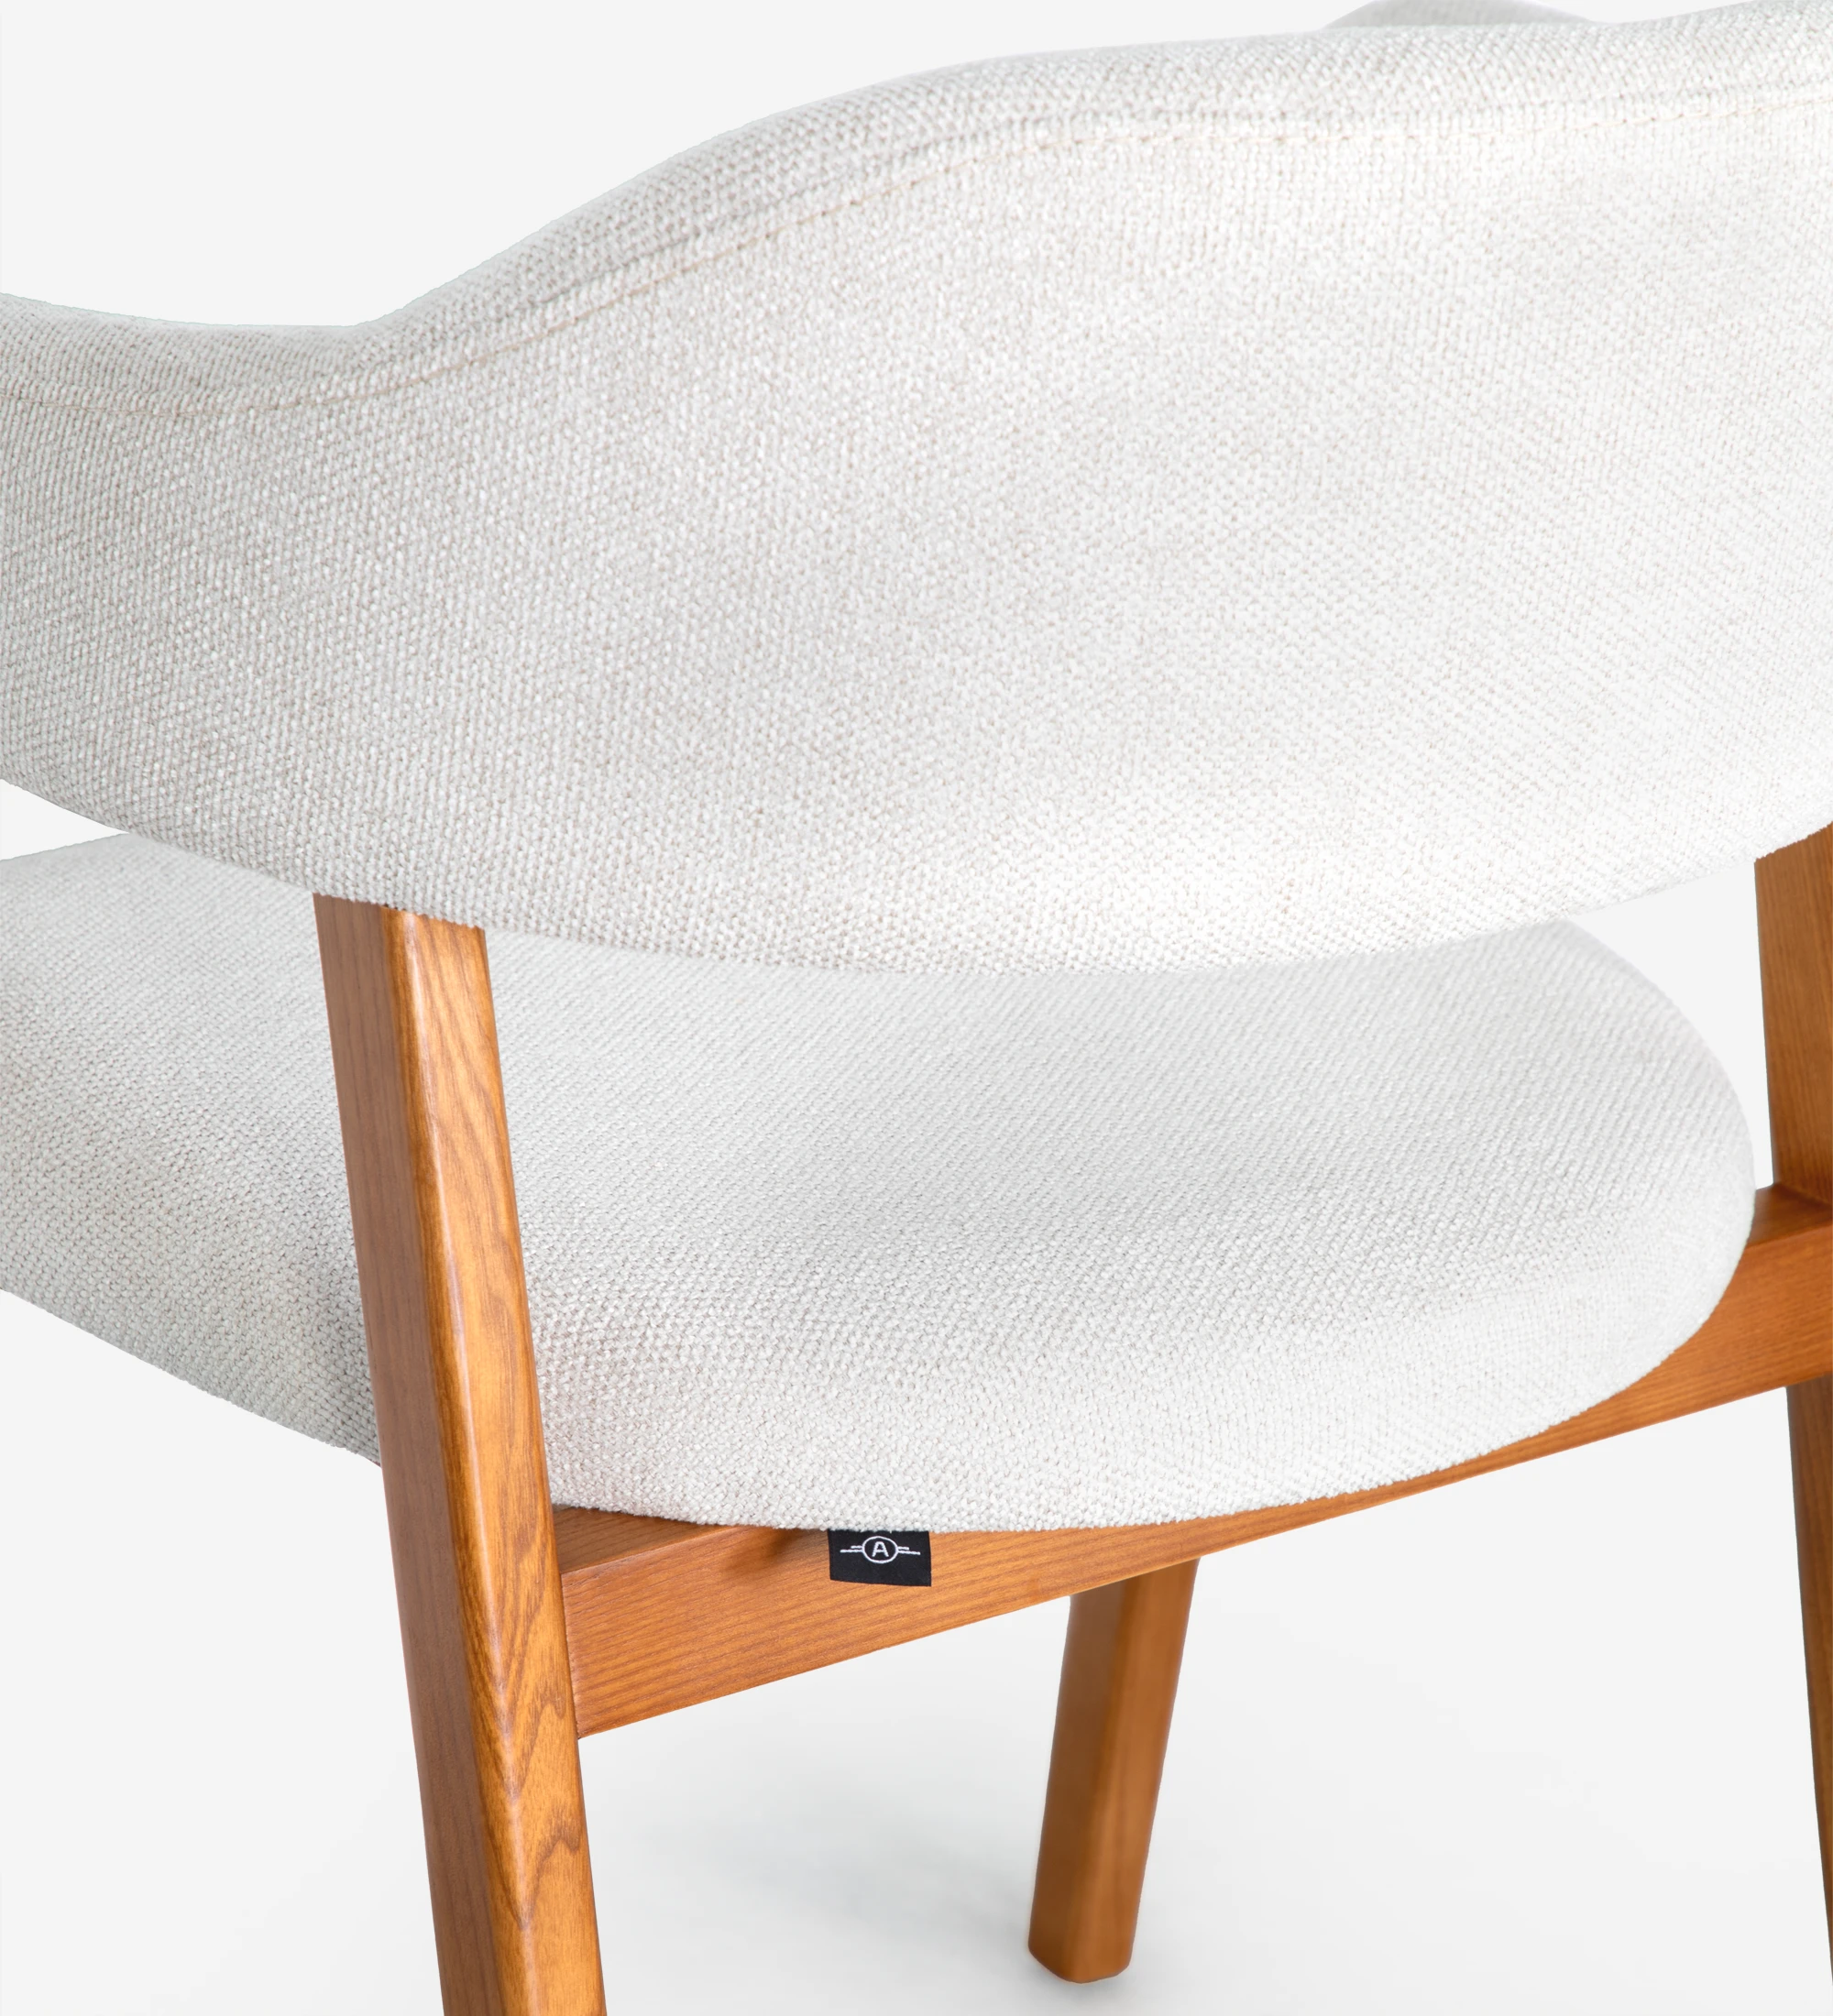 Chaise avec accoudoirs, en bois de frêne couleur miel, avec assise et dossier recouverts de tissu